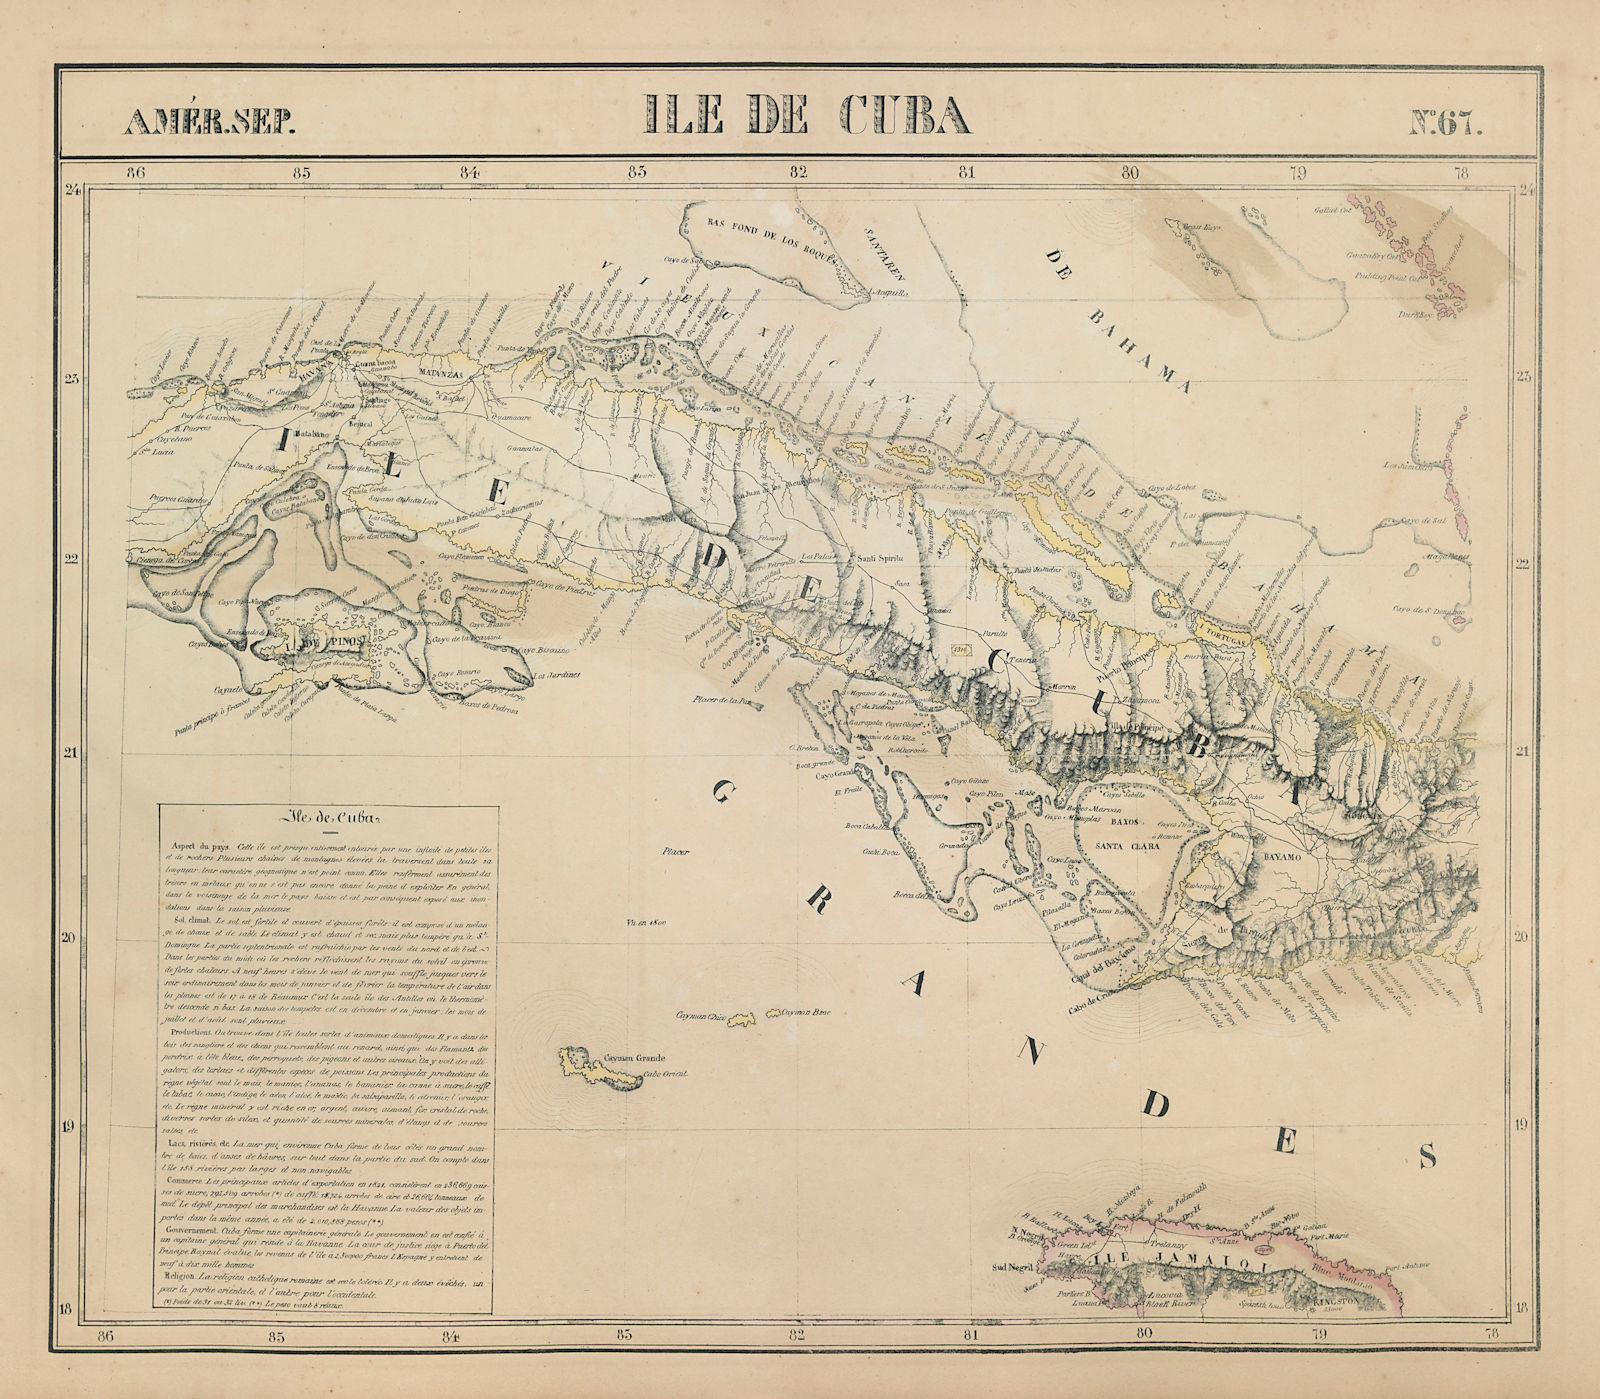 Amér. Sep. Ile de Cuba #67. Cuba & Jamaica Cayman Islands. VANDERMAELEN 1827 map